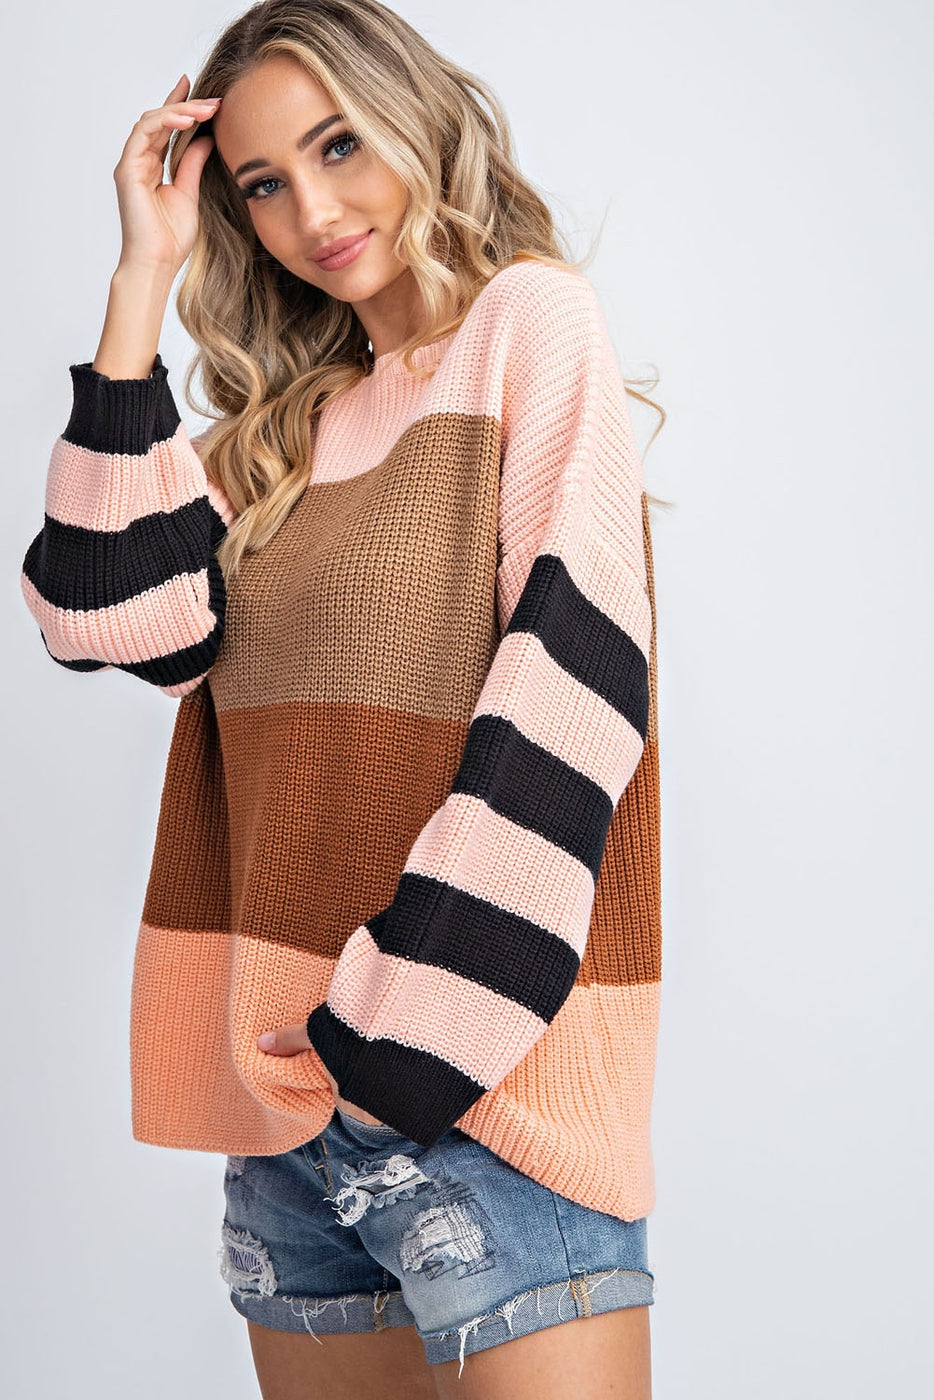 Stillwater Stripes Sweater